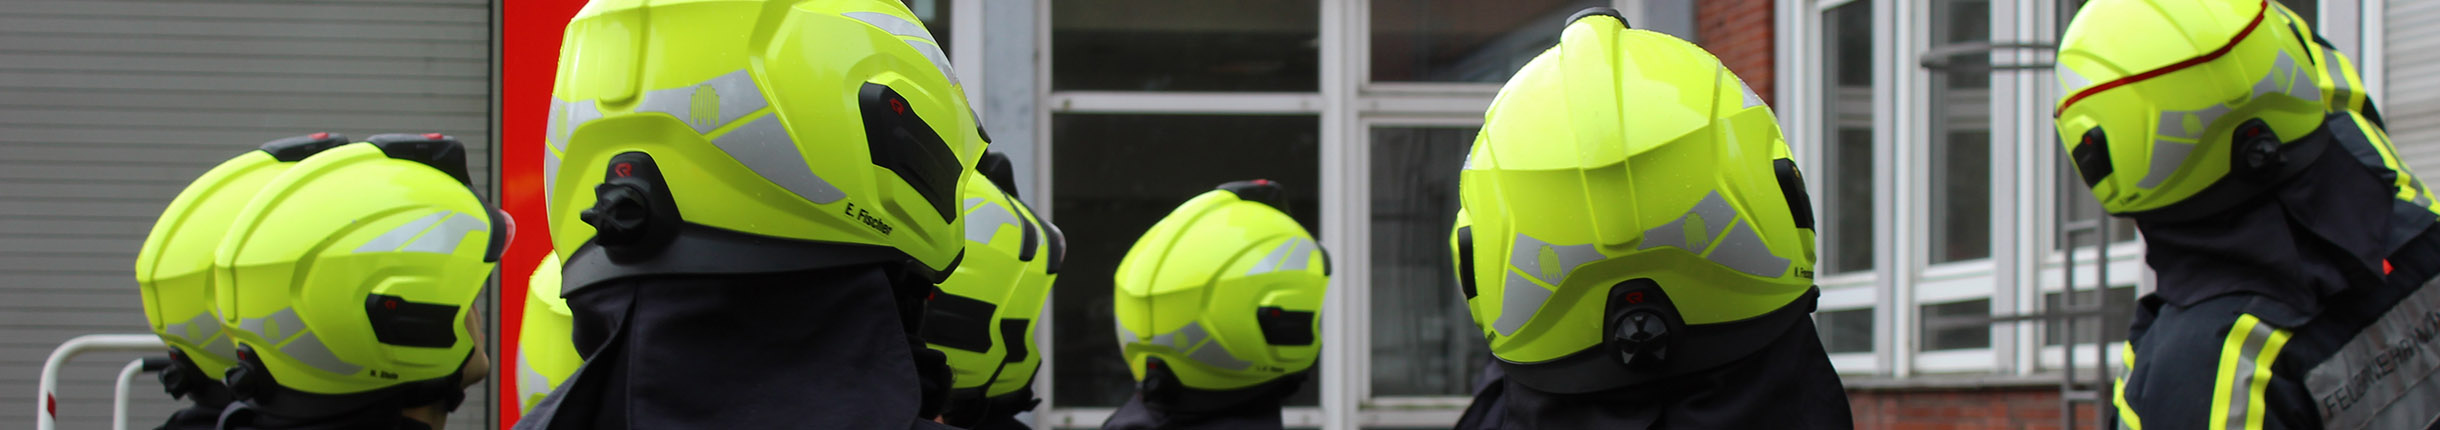 Einsatzkräfte der Feuerwehr mit neongelben Helmen